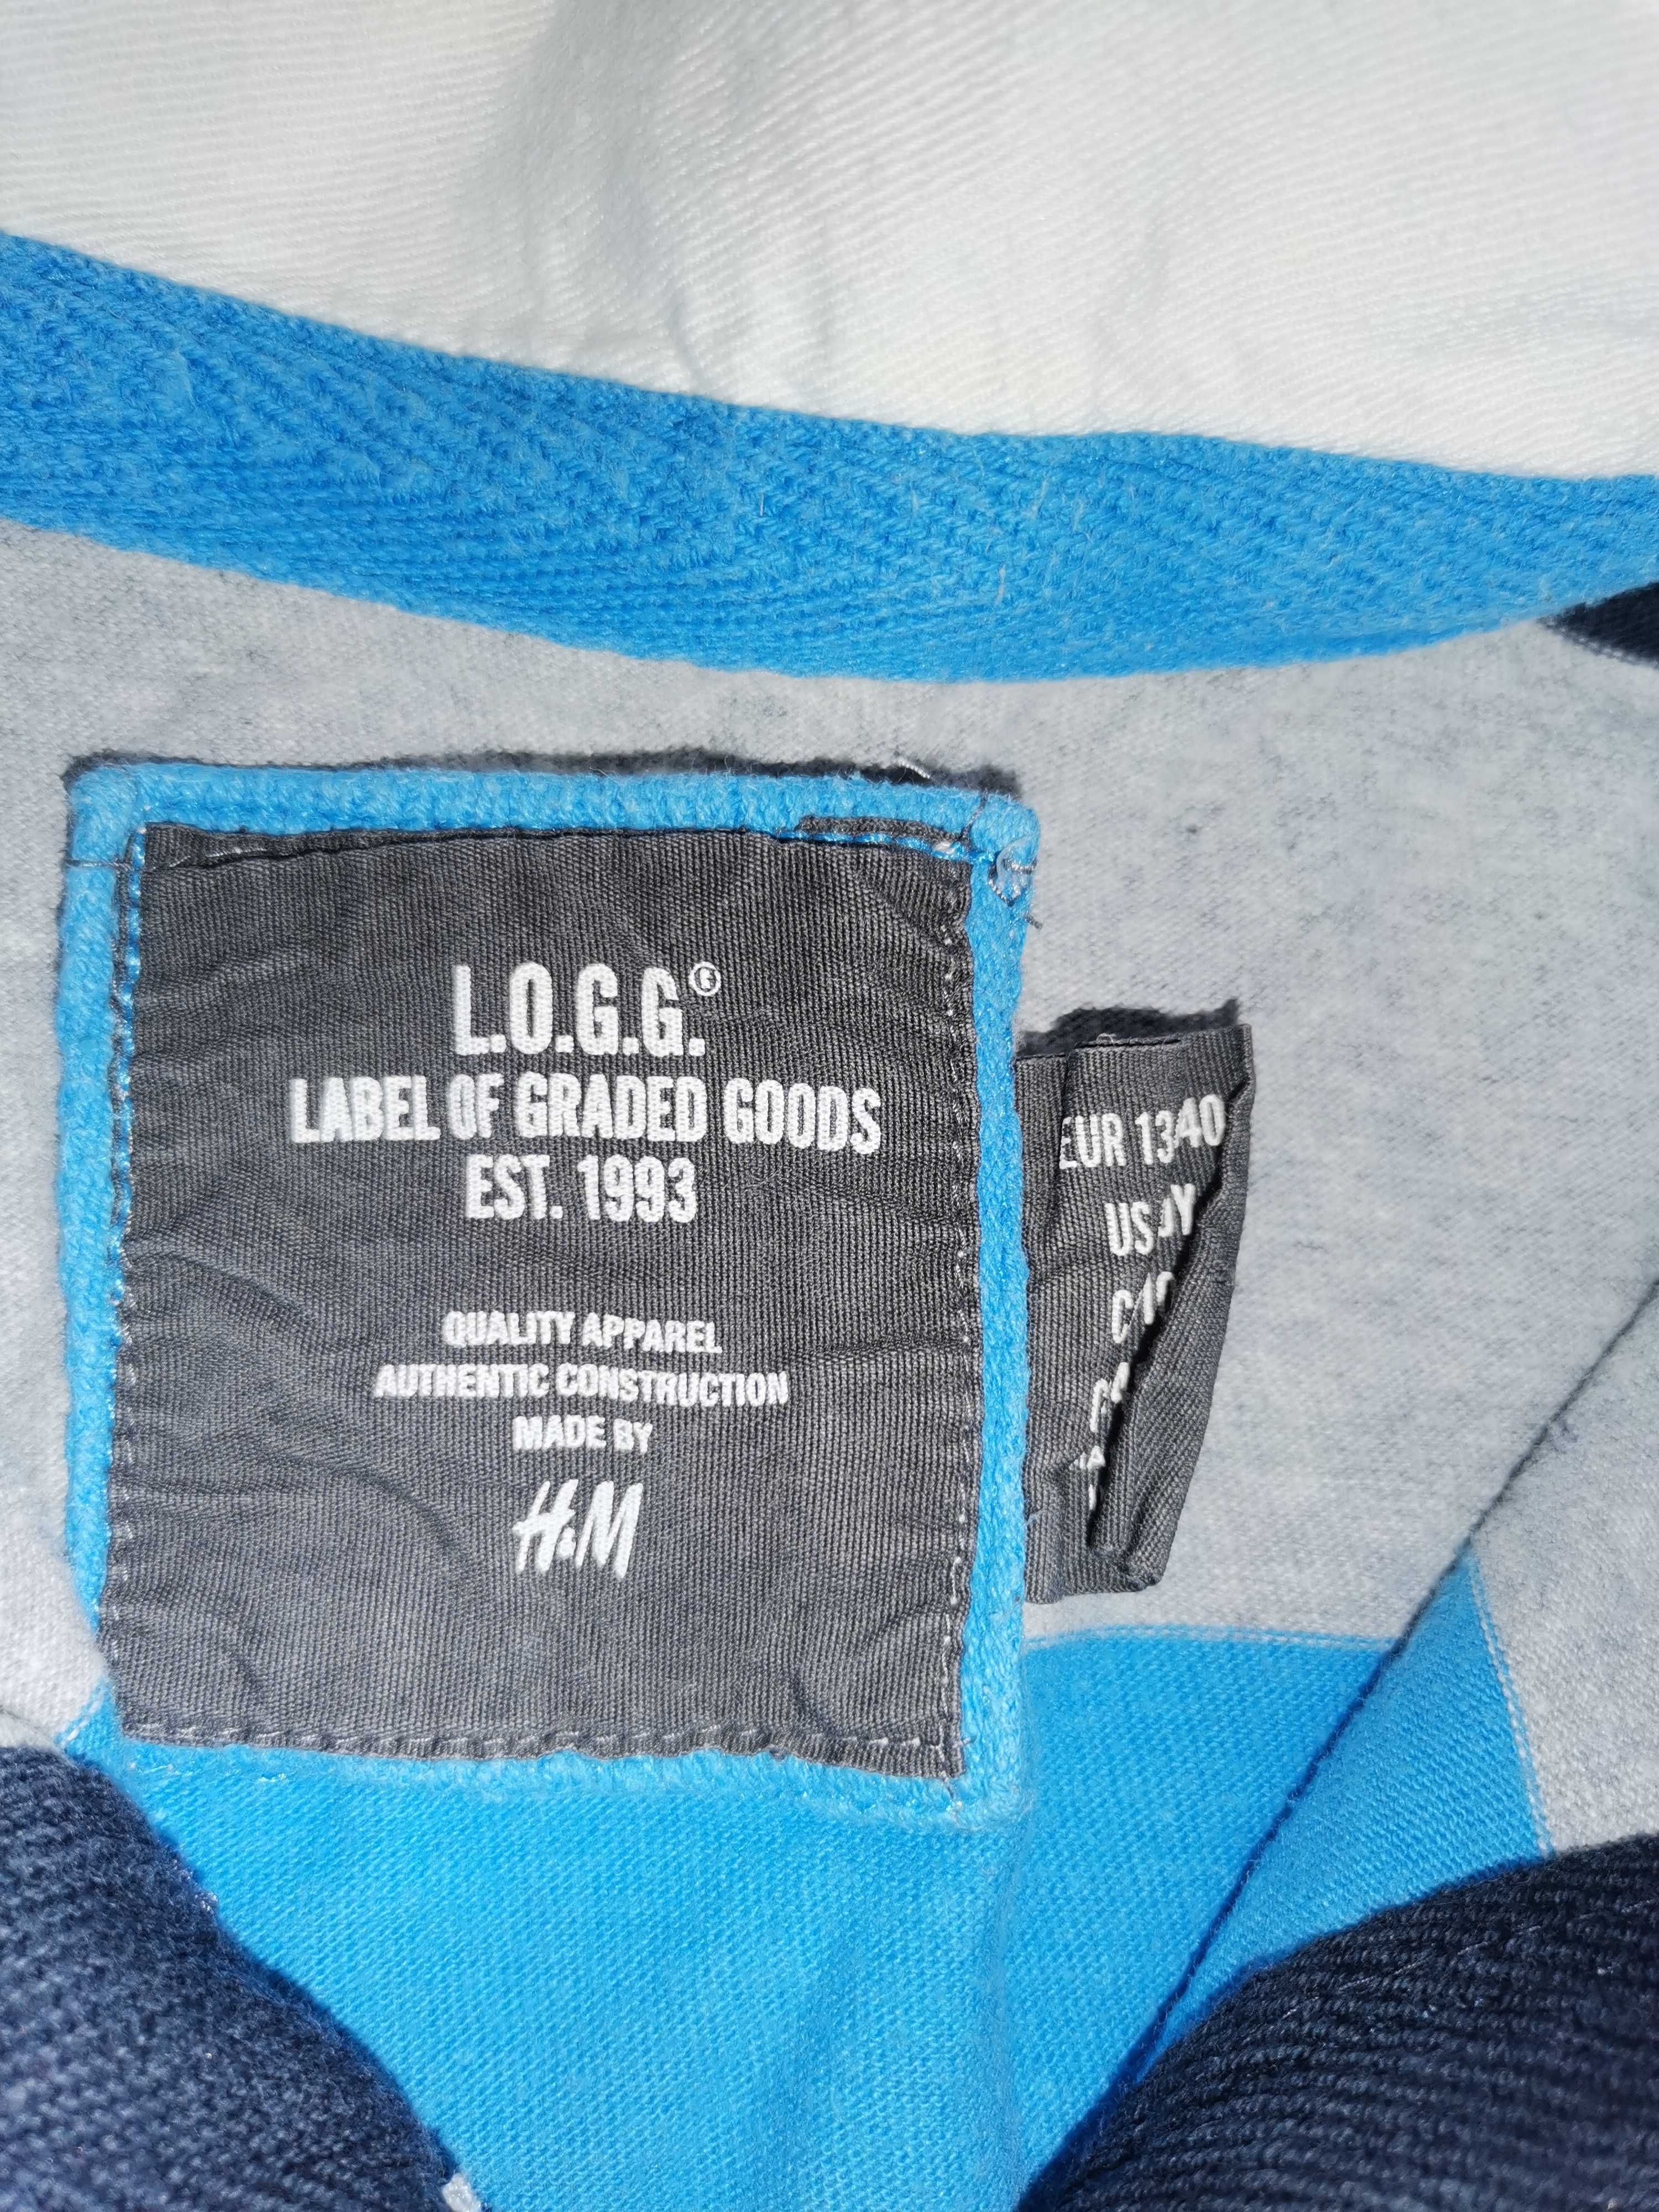 Zestaw. Bluzy chłopięce marki H&m rozmiar 134, 140. Zestaw 3 sztuki.